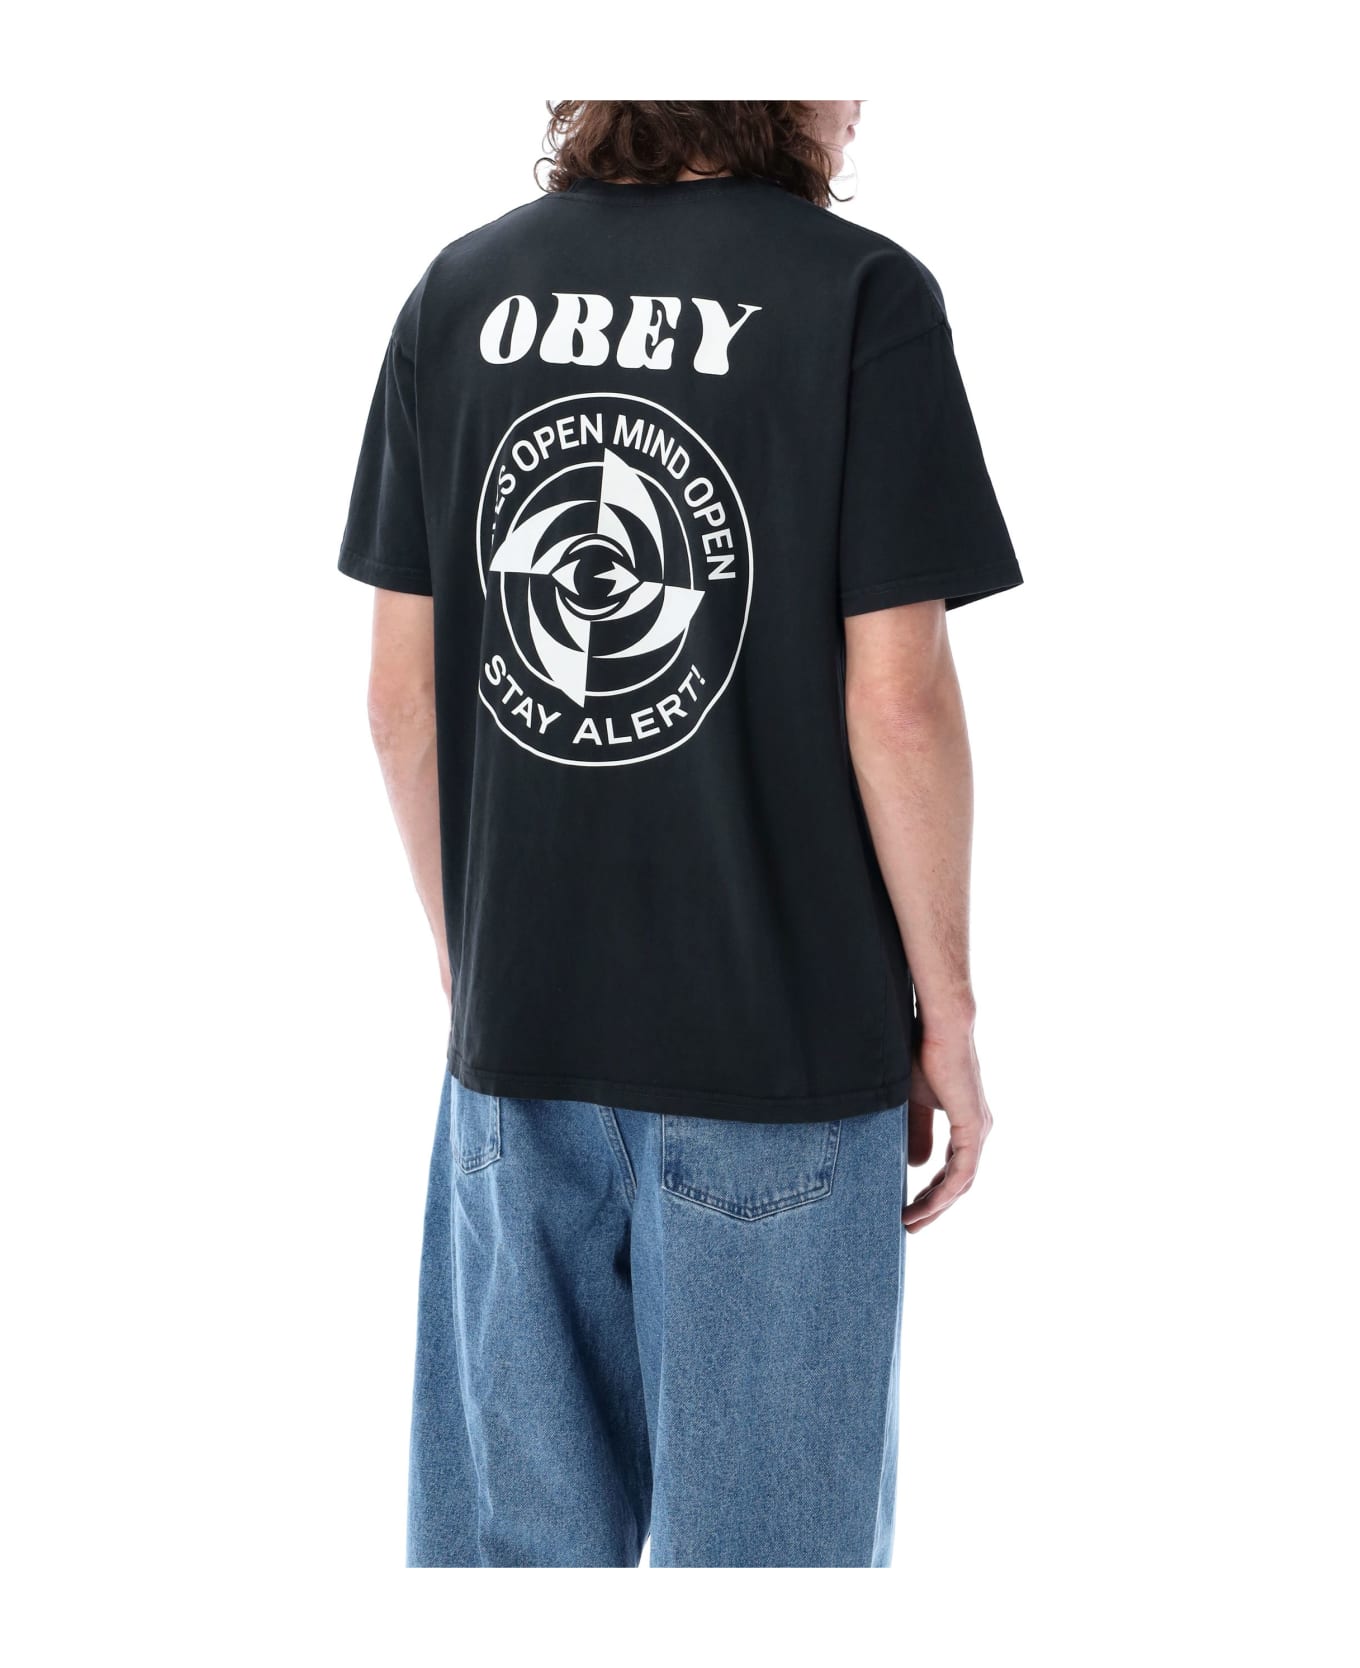 Obey Saty Alert Pigment T-shirt - PIGMENT VINTAGE BLACK